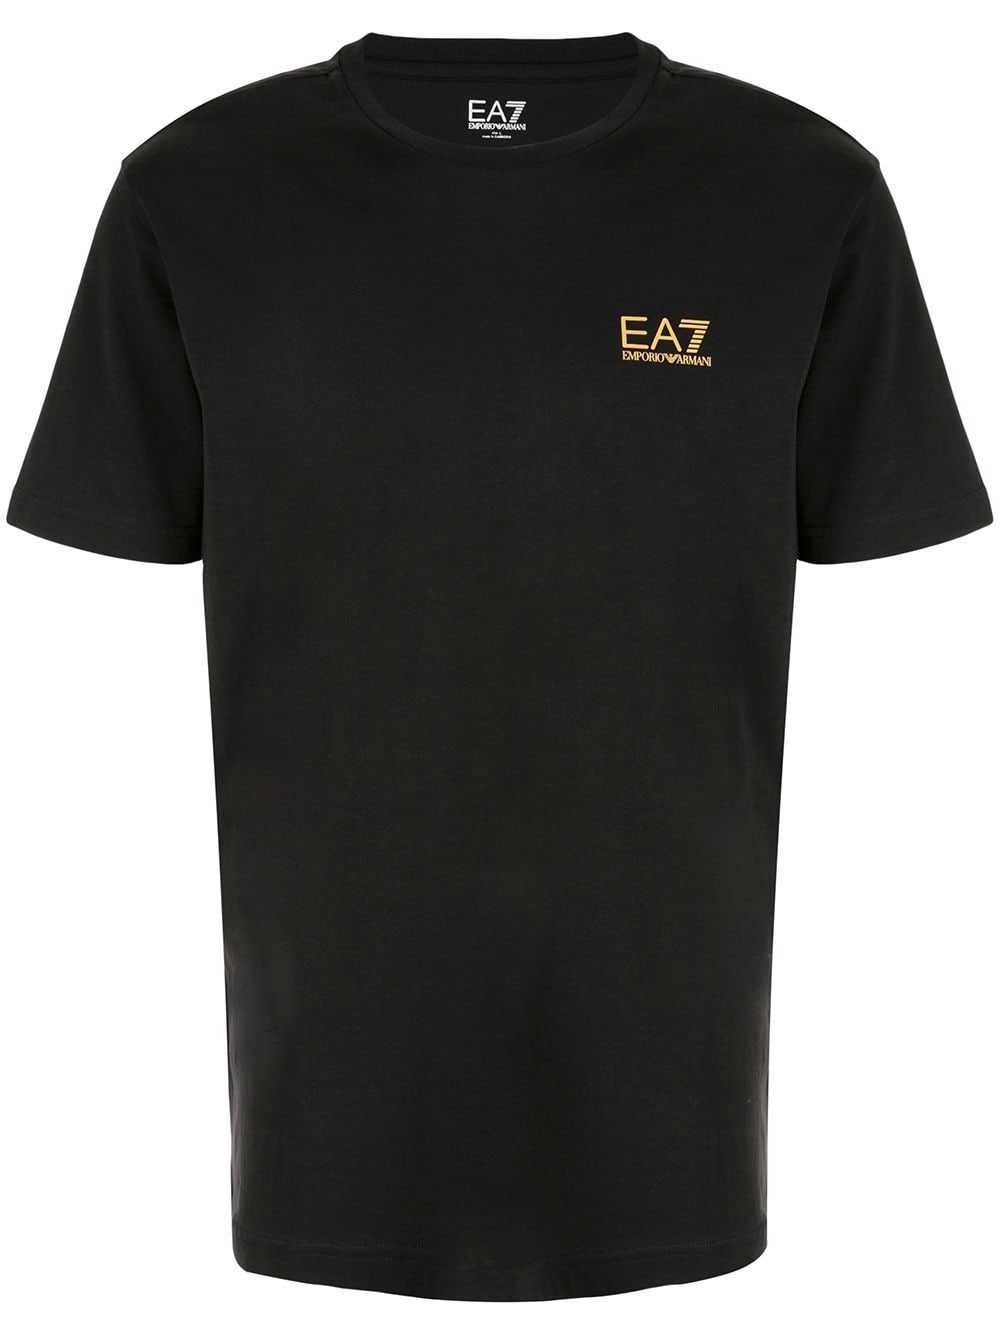 Ea7 Emporio Armani branded T-shirt - Black von Ea7 Emporio Armani